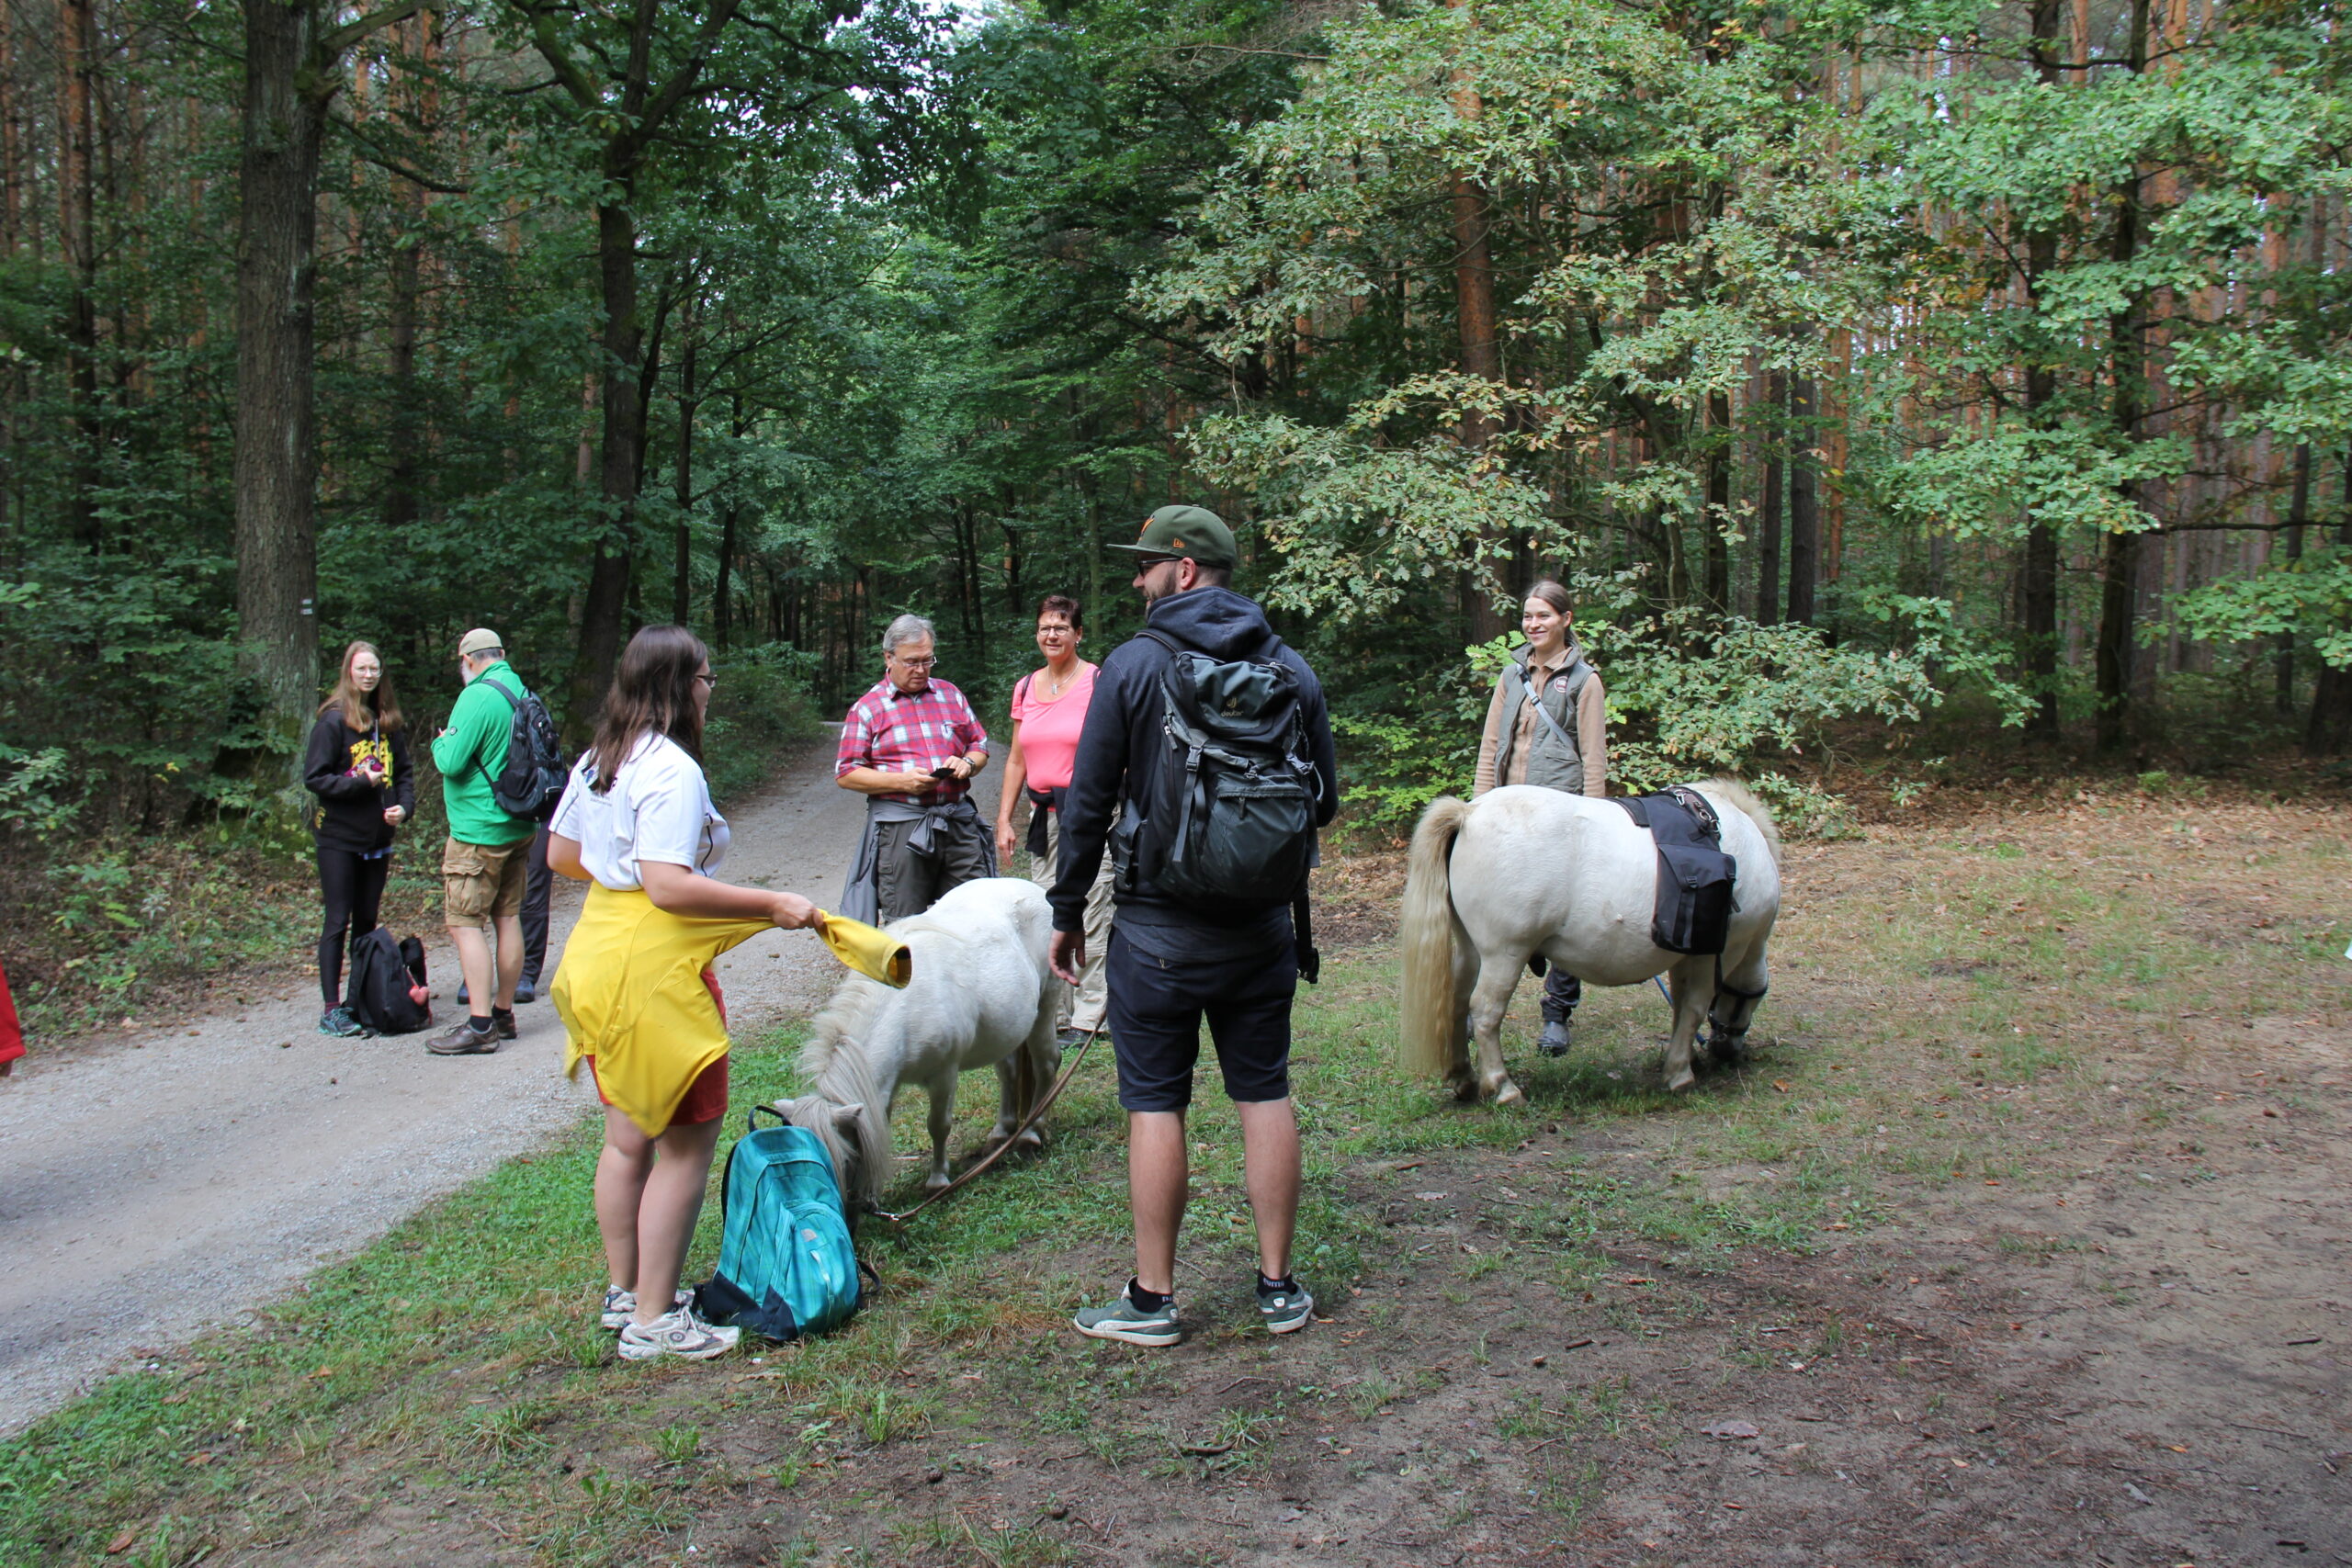 kurze Pause beim Wandertag 2018 in der Dresdner Heide mit zwei Ponys